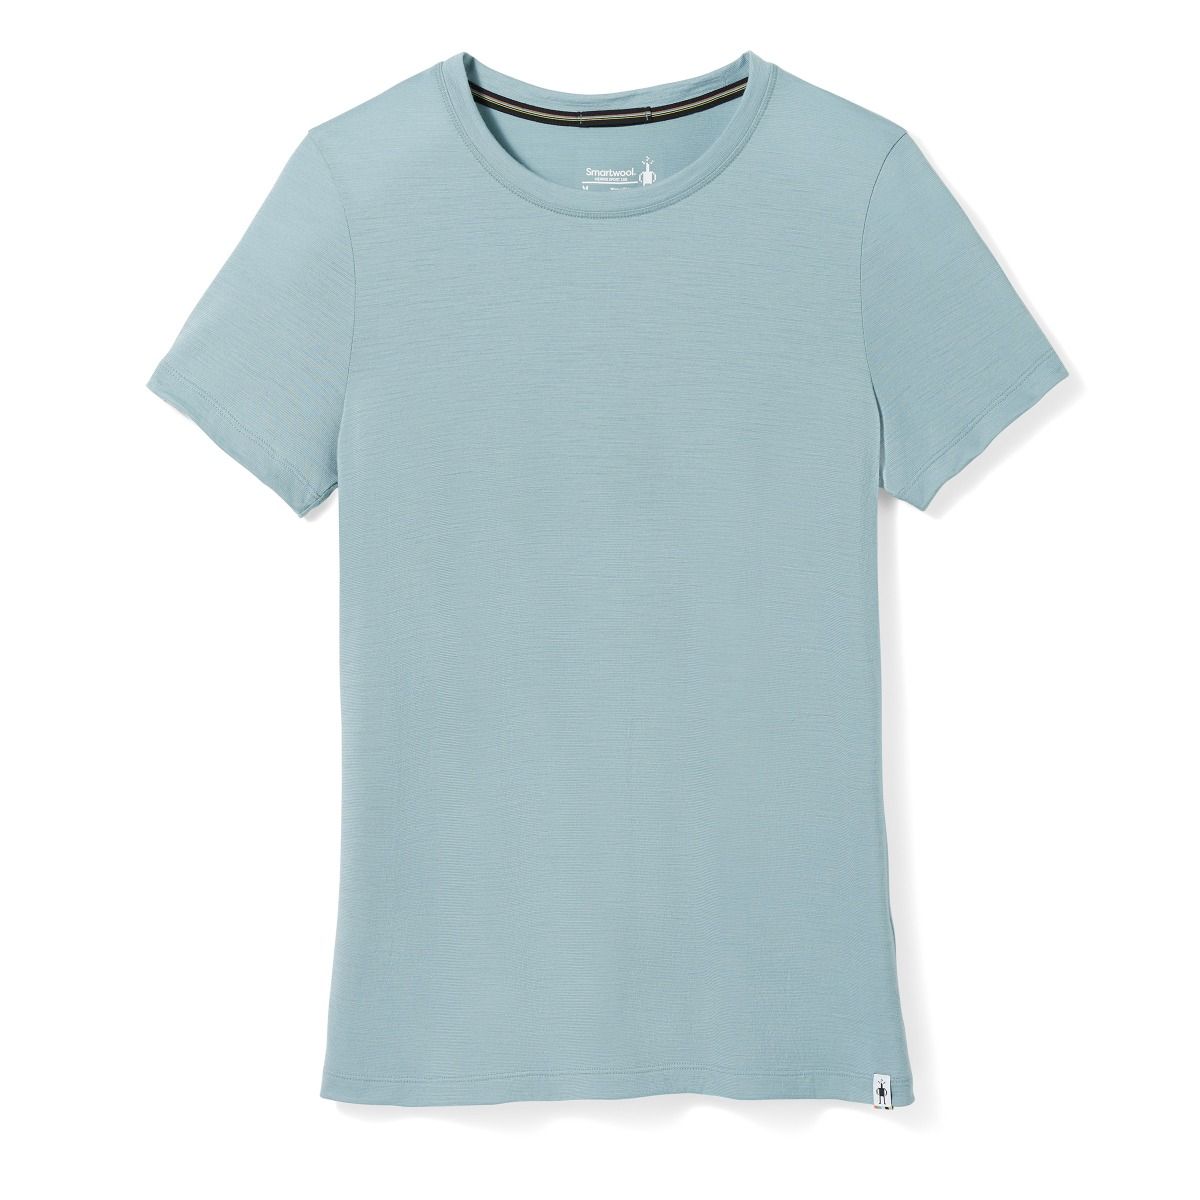 Under Armour Threadborne Womens Running Top Blue Short Sleeve T-Shirt XS 8  S 10